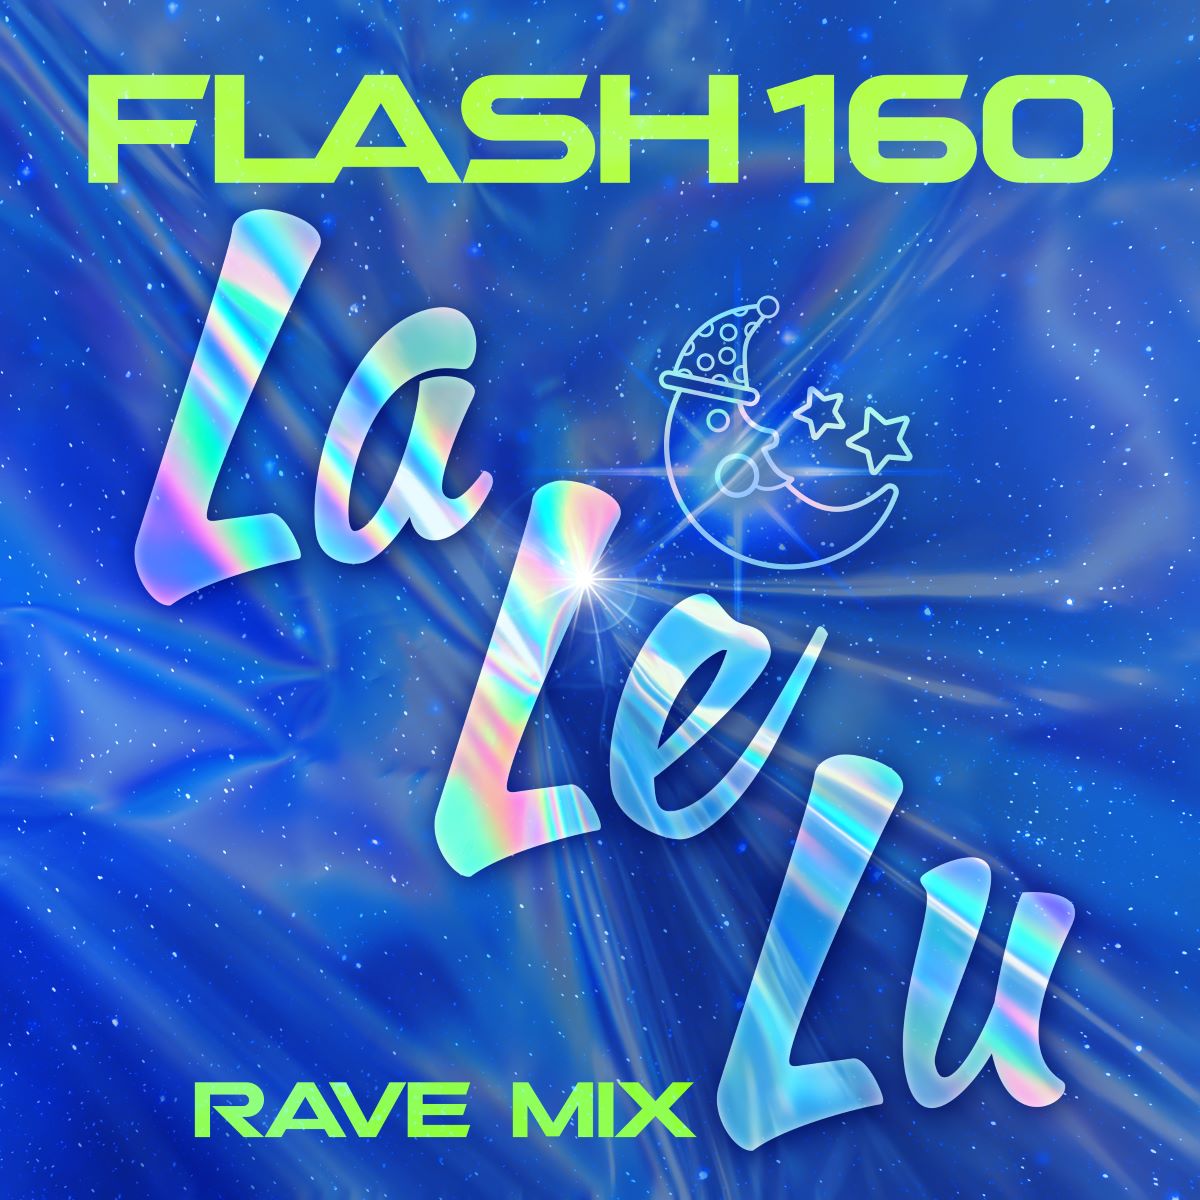 Flash160 – La Le Lu dig 160874